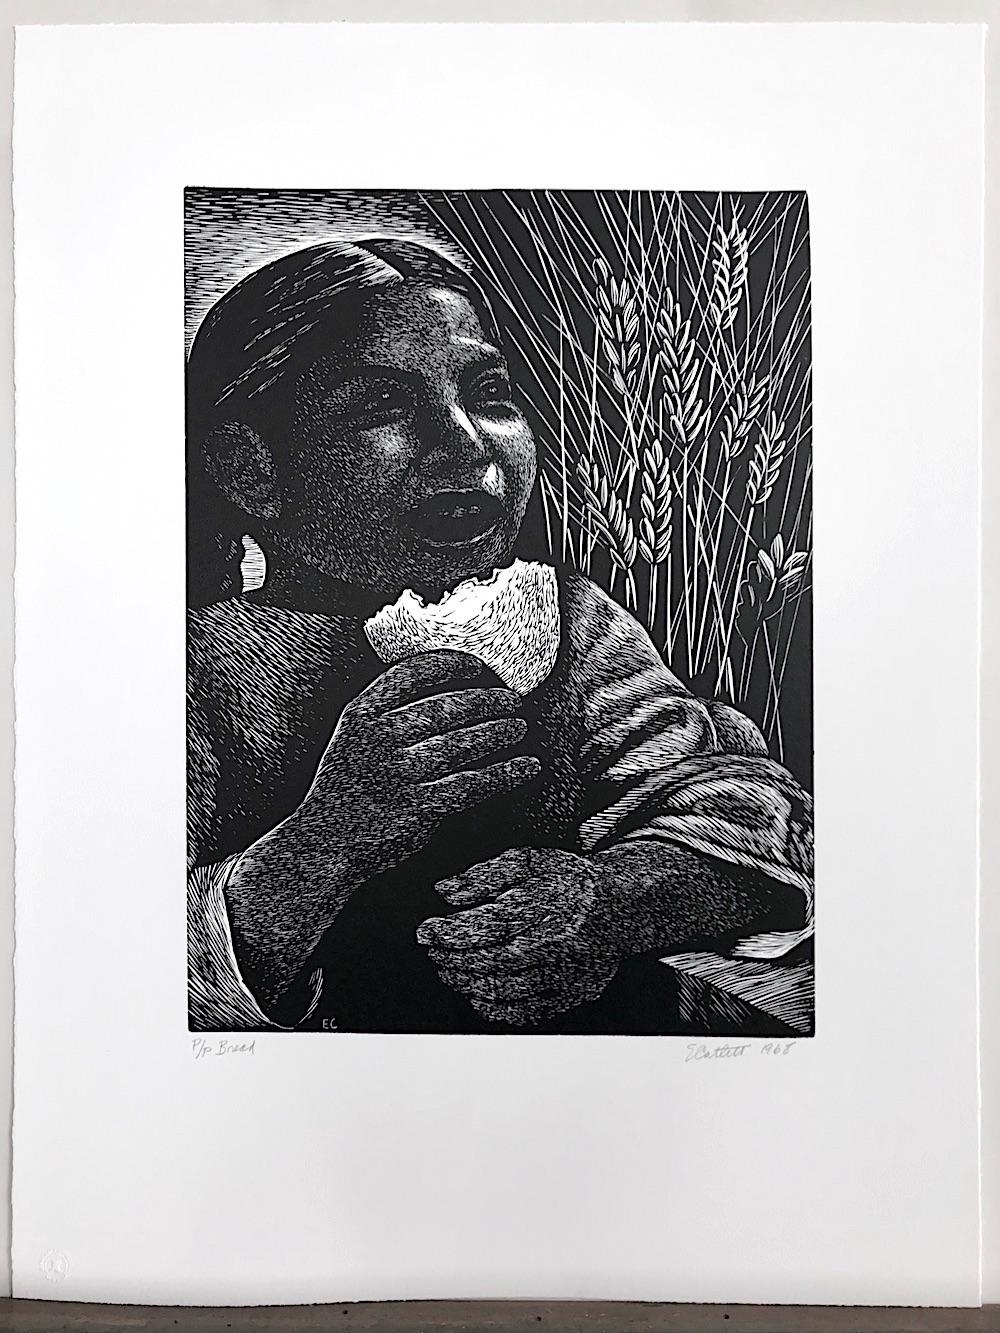 BREAD (Derecho Alimentarse) The Right To Eat (Das Recht zu essen), geschaffen von der afro-amerikanischen Grafikerin und Bildhauerin Elizabeth Catlett.

BREAD ist ein realistisches Linolschnitt-Porträt, das ein junges mexikanisches Mädchen mit